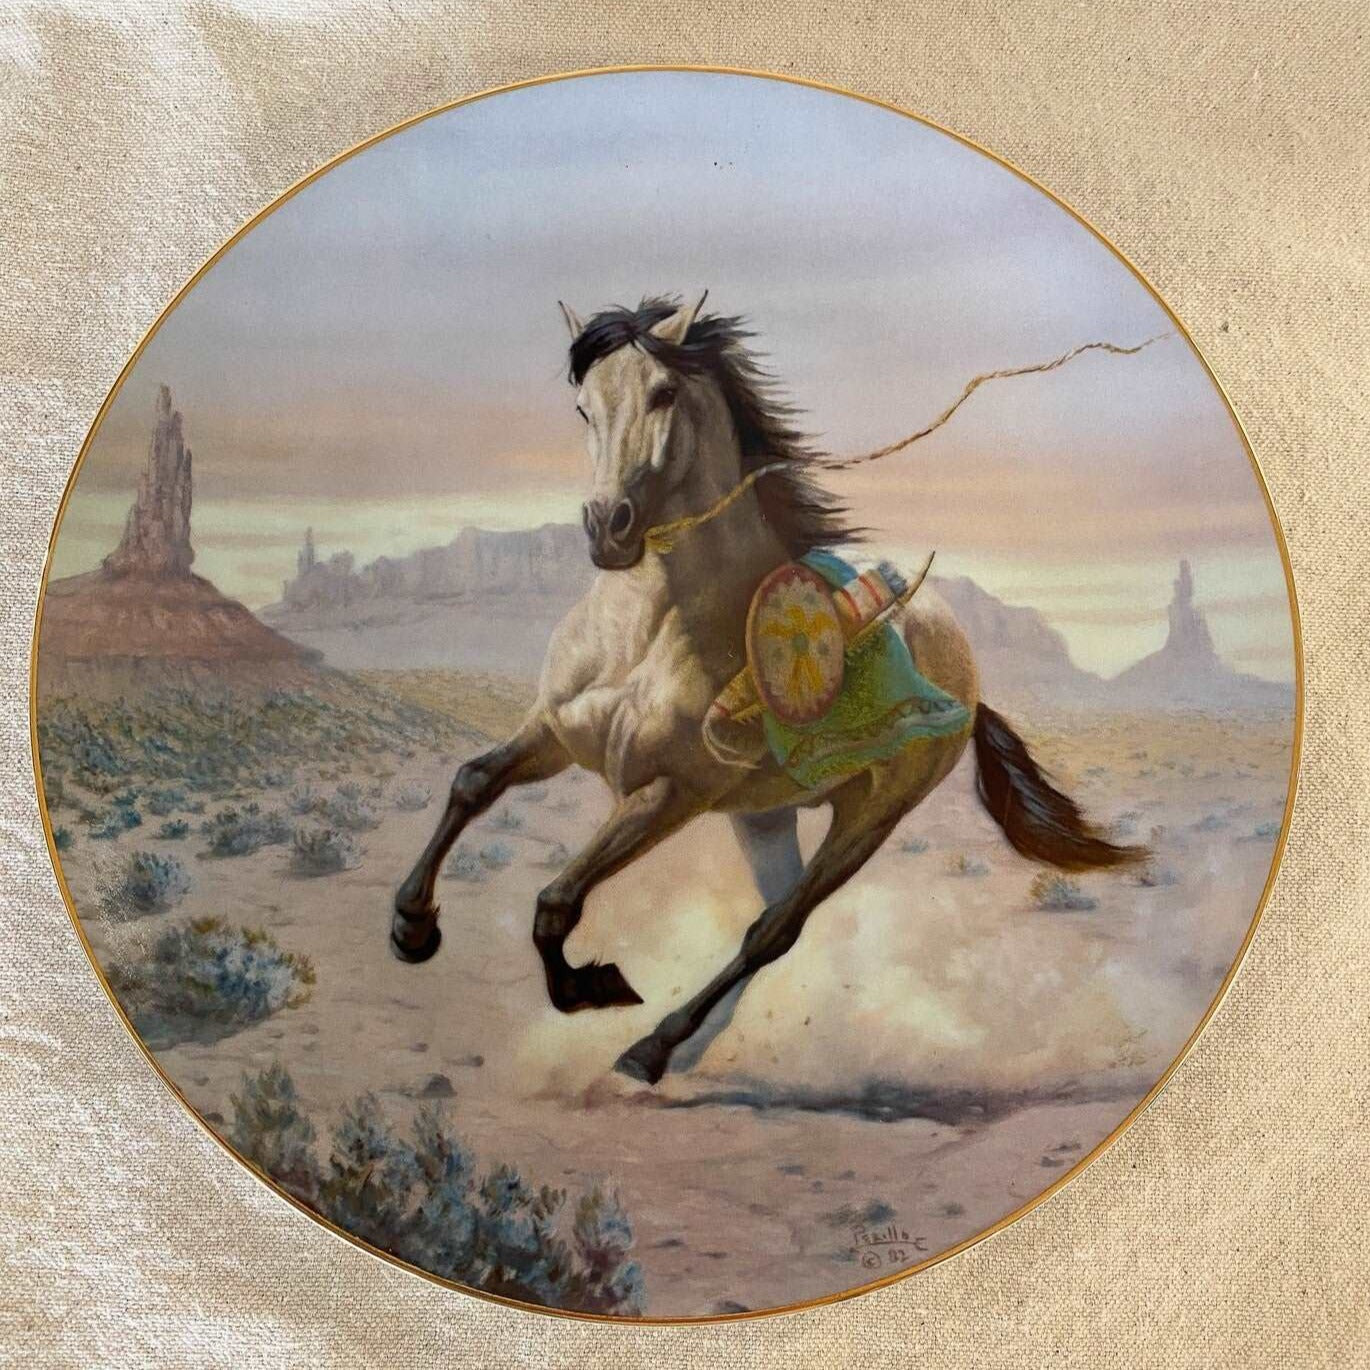 Apache War Pony by Perillo 1983-Perillo-Collector Plate-Stockton Farm